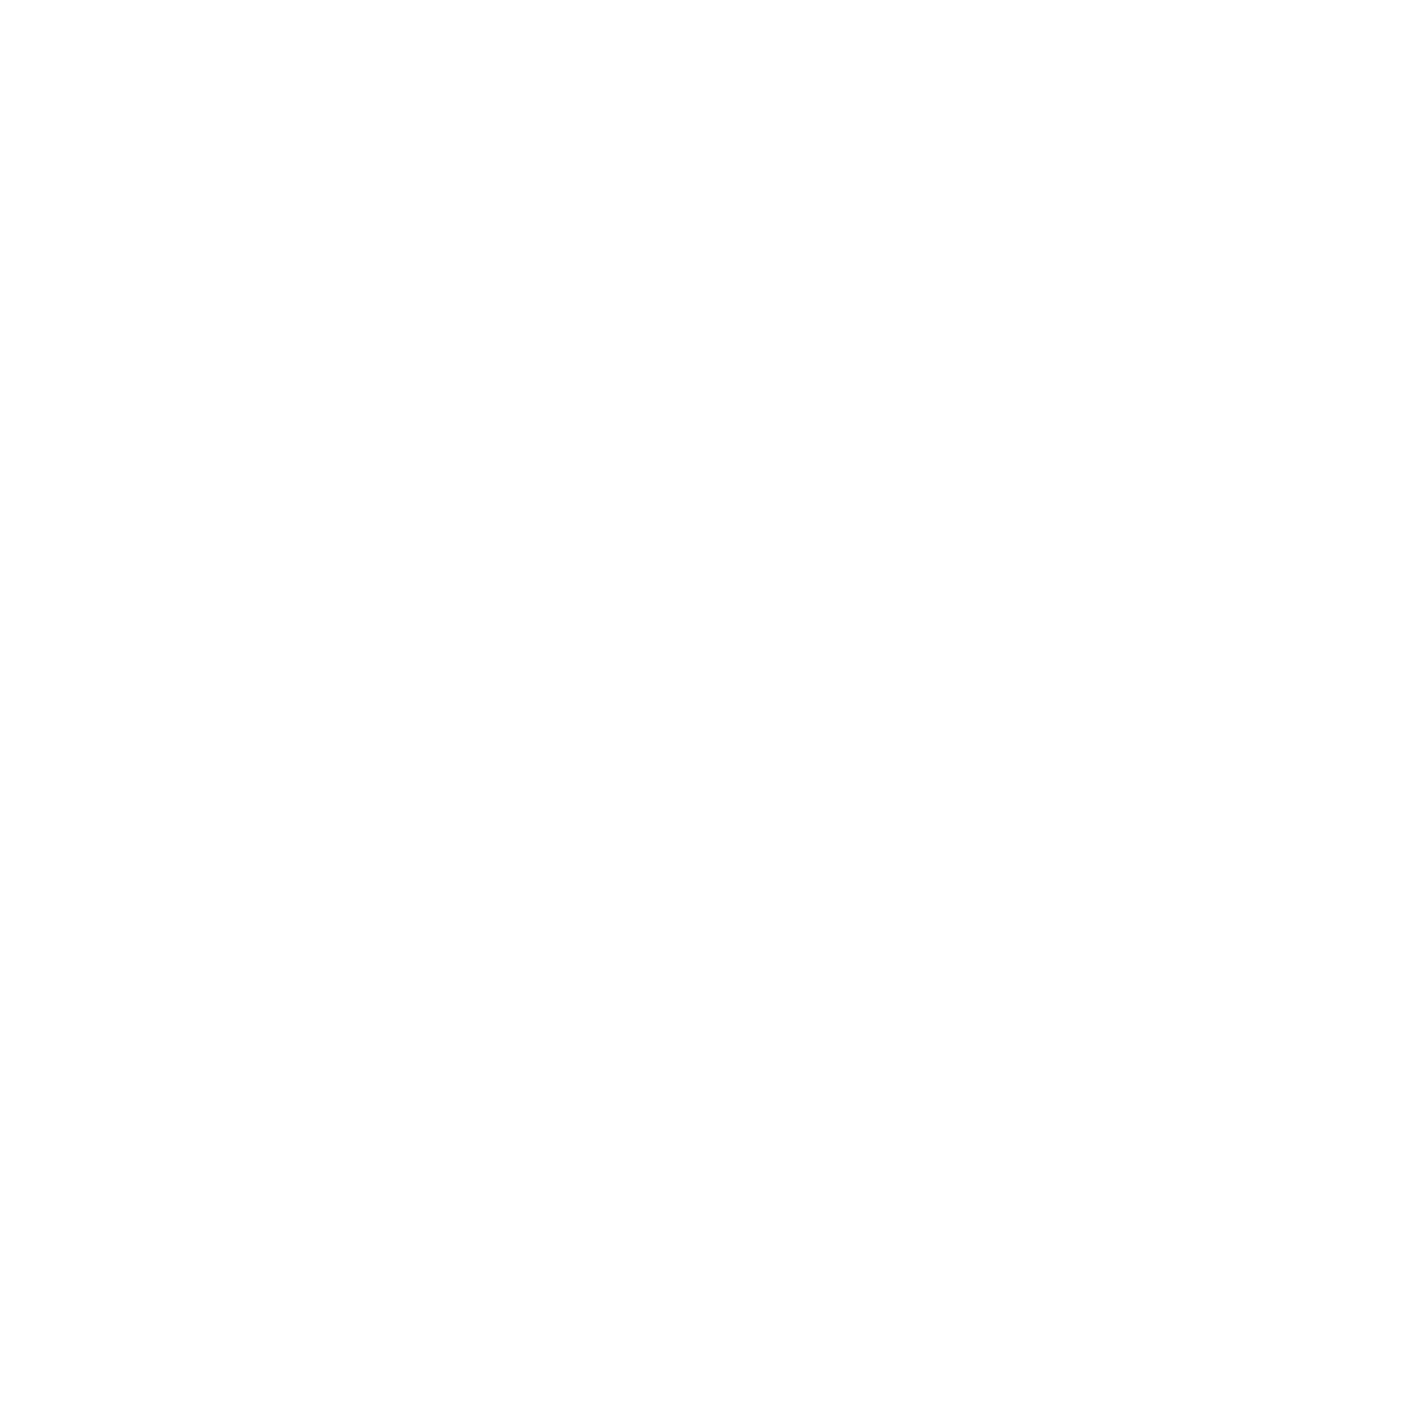 LeenBakker